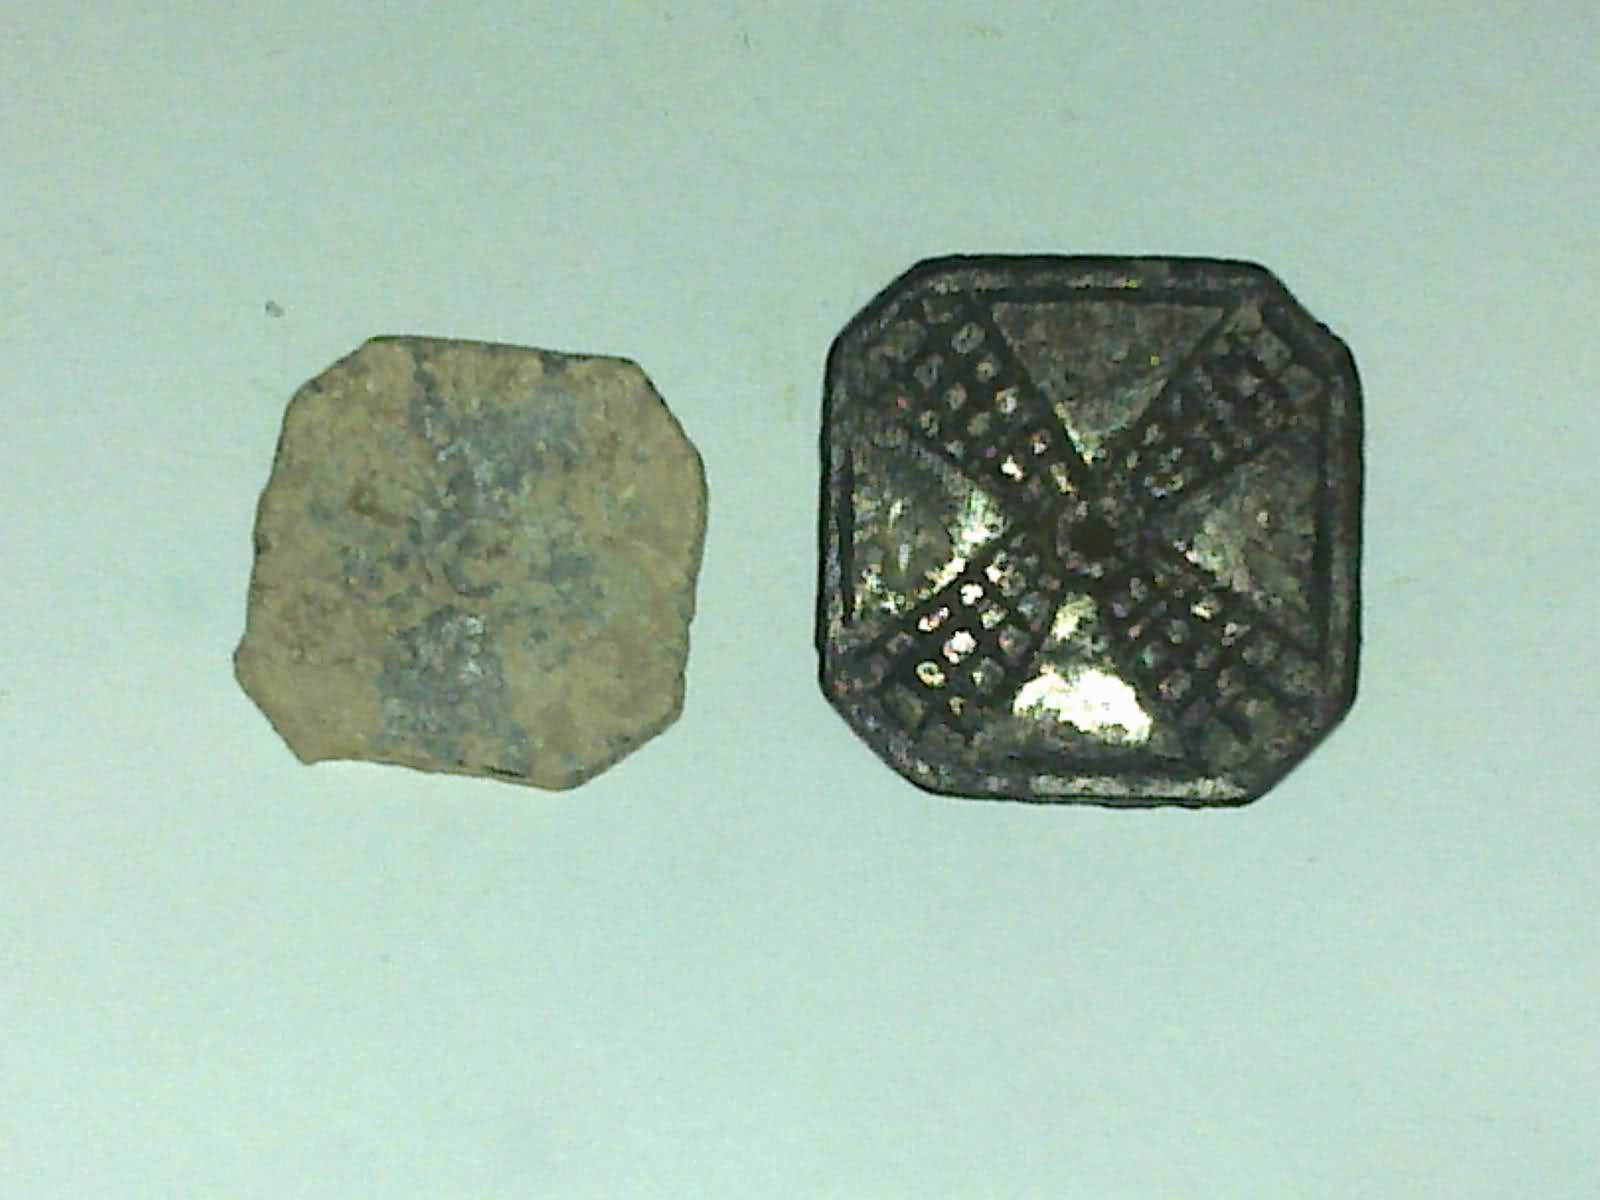 Boton de aspas cuatrípalas, siglos XVII, XVIII, XIX. Bhdniu